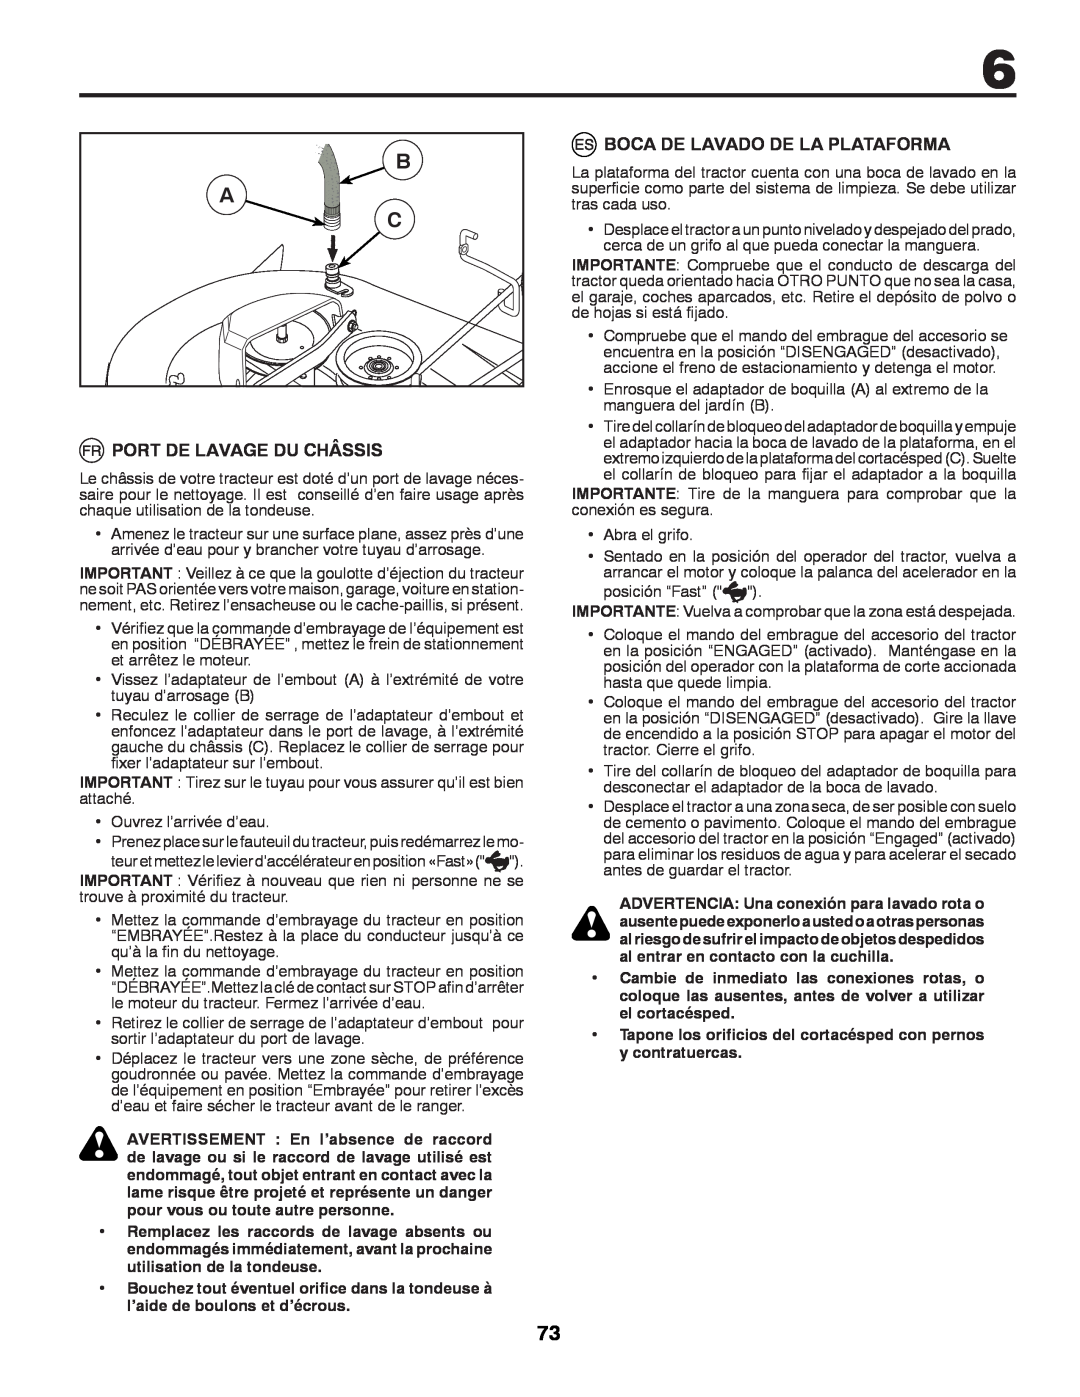 McCulloch 532 43 37-12 Rev. 1 instruction manual B A C, Port De Lavage Du Châssis, Boca De Lavado De La Plataforma 